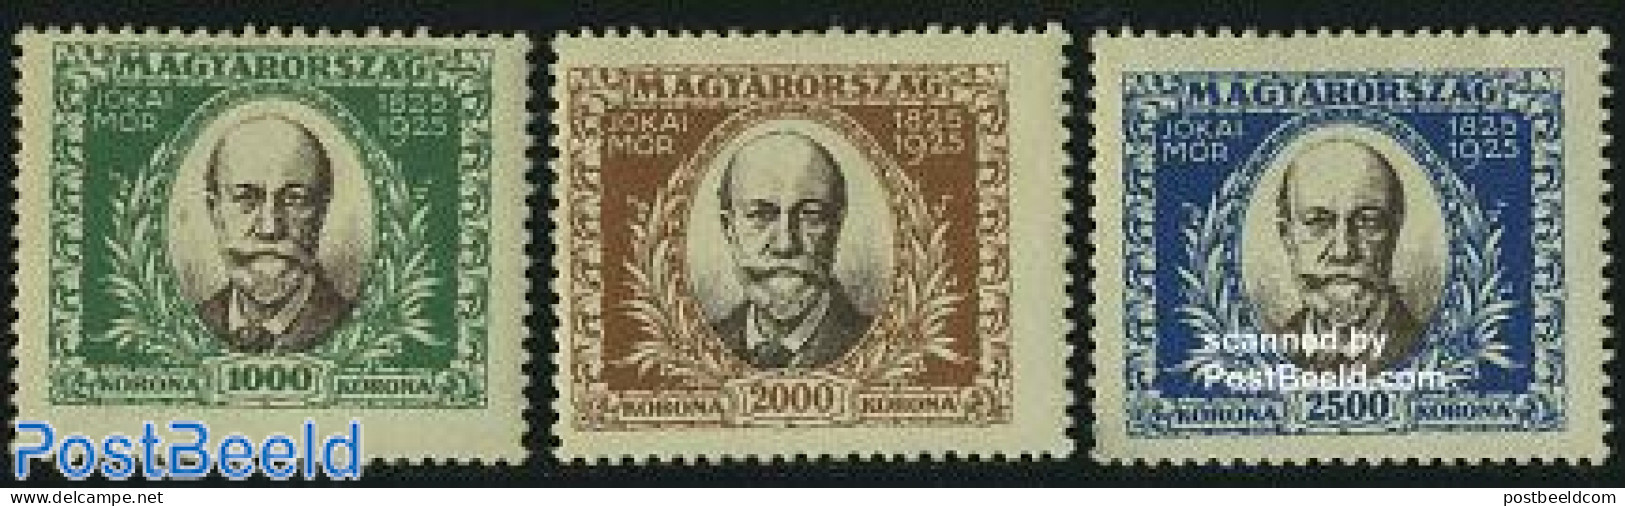 Hungary 1925 M. Jokais Birth Centenary 3v, Mint NH, Art - Authors - Neufs